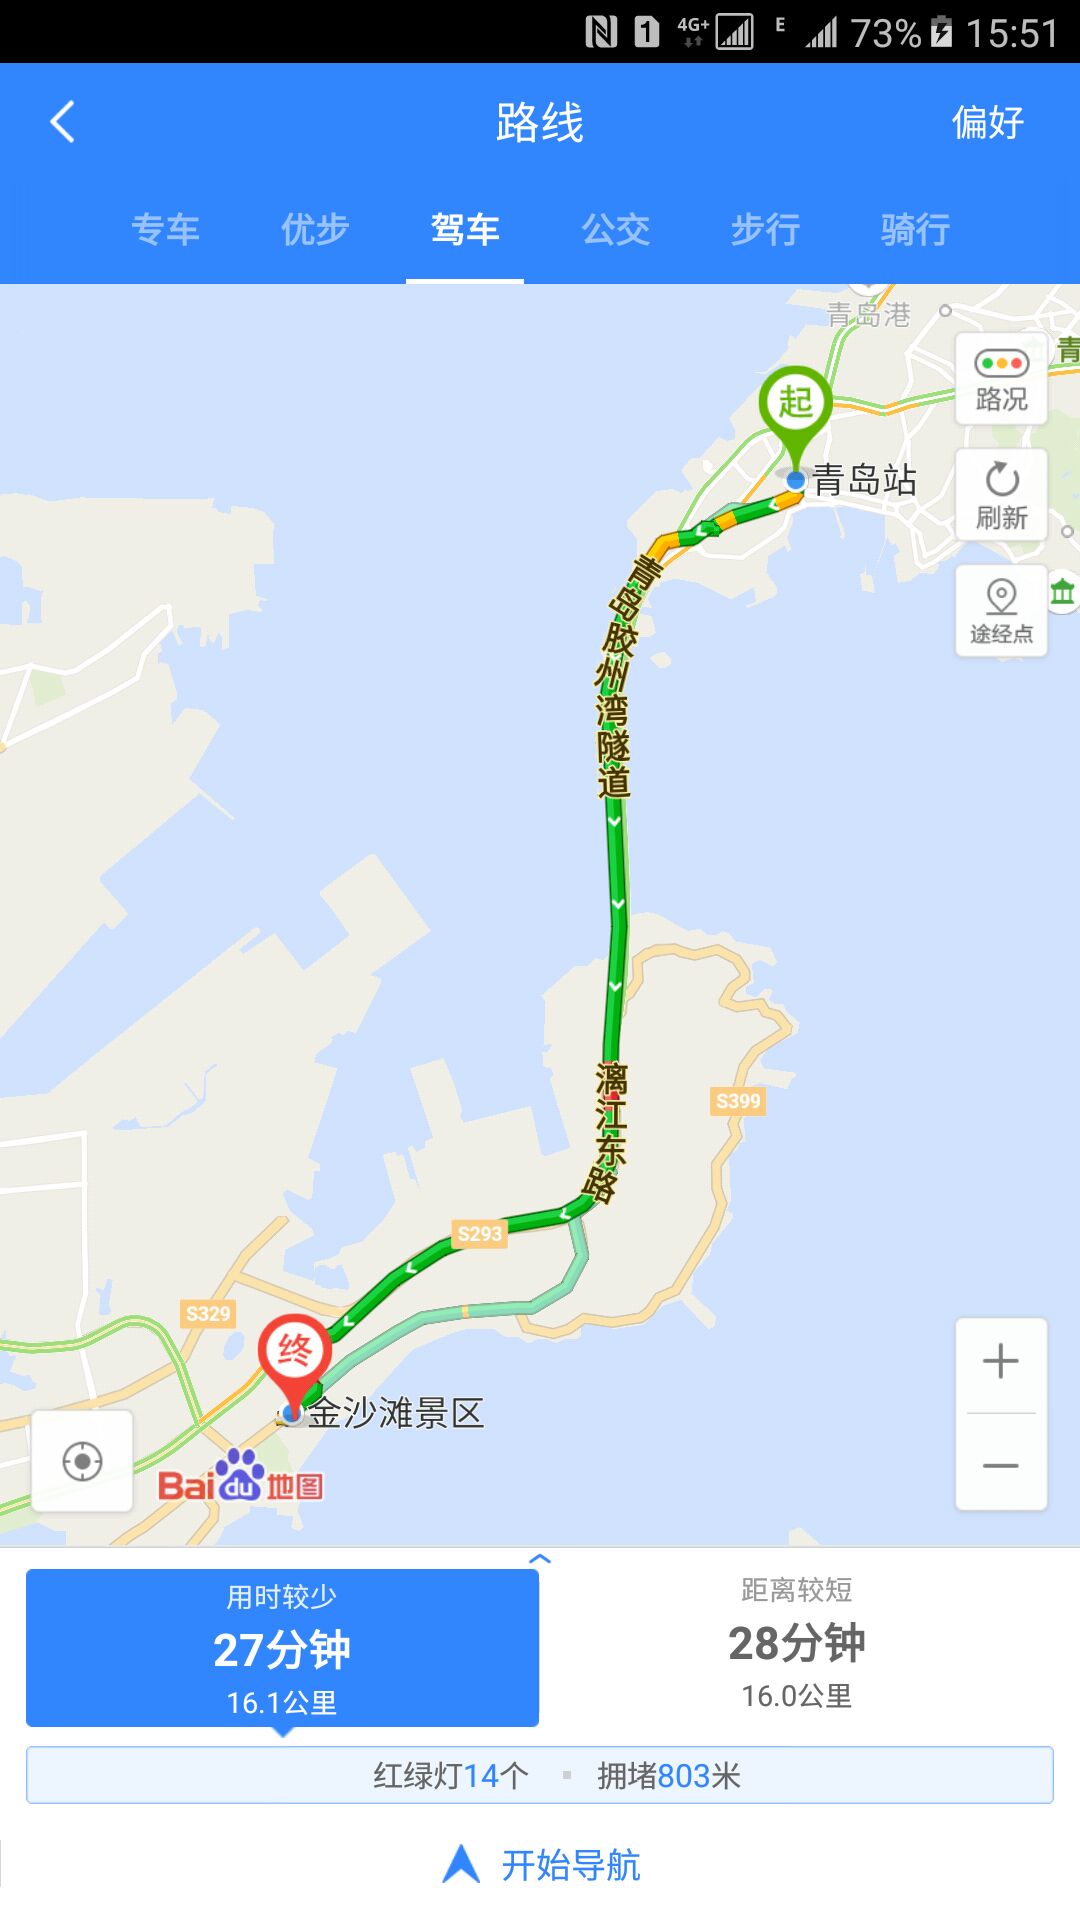 青岛金沙滩地图图片